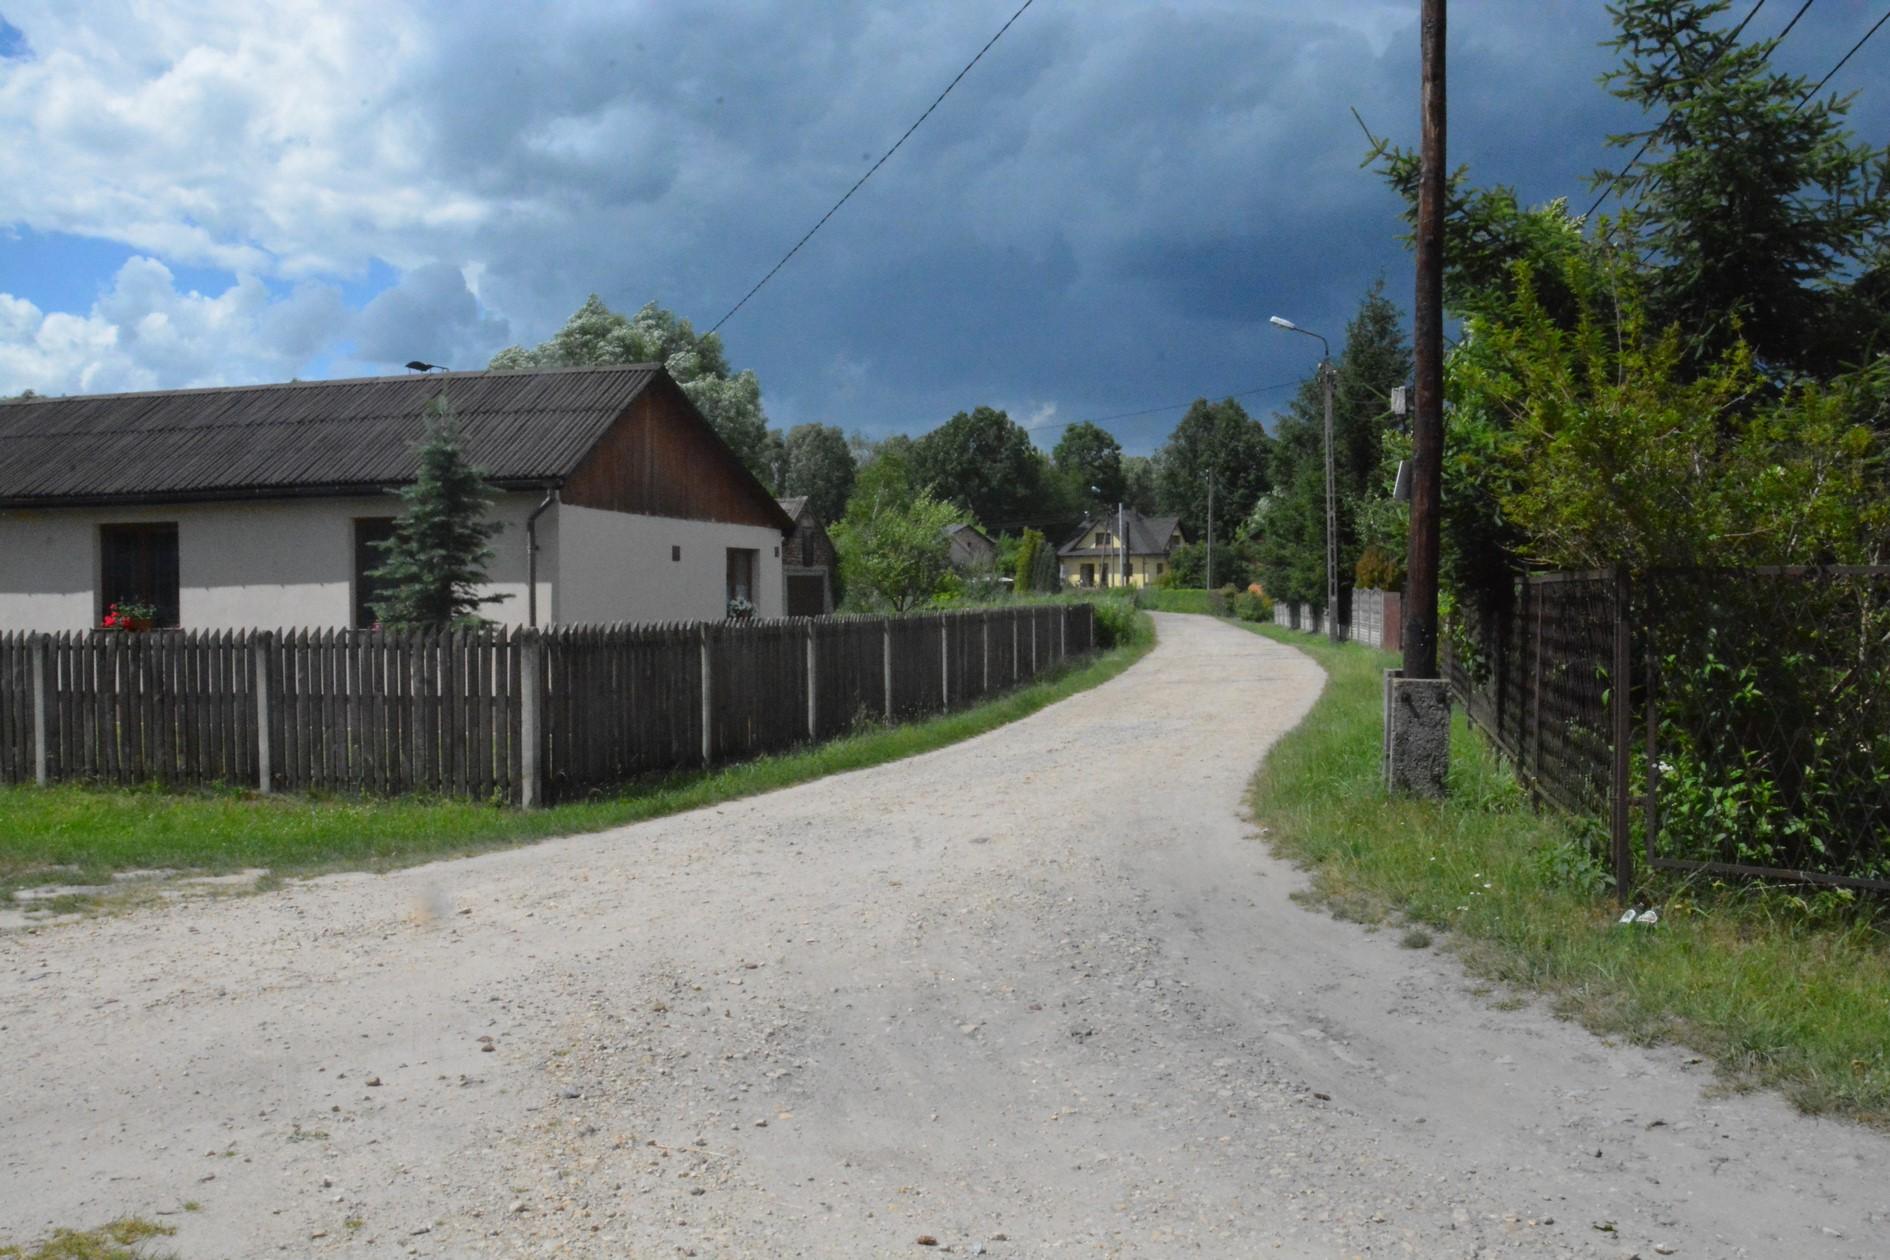 Droga między domami na wsi